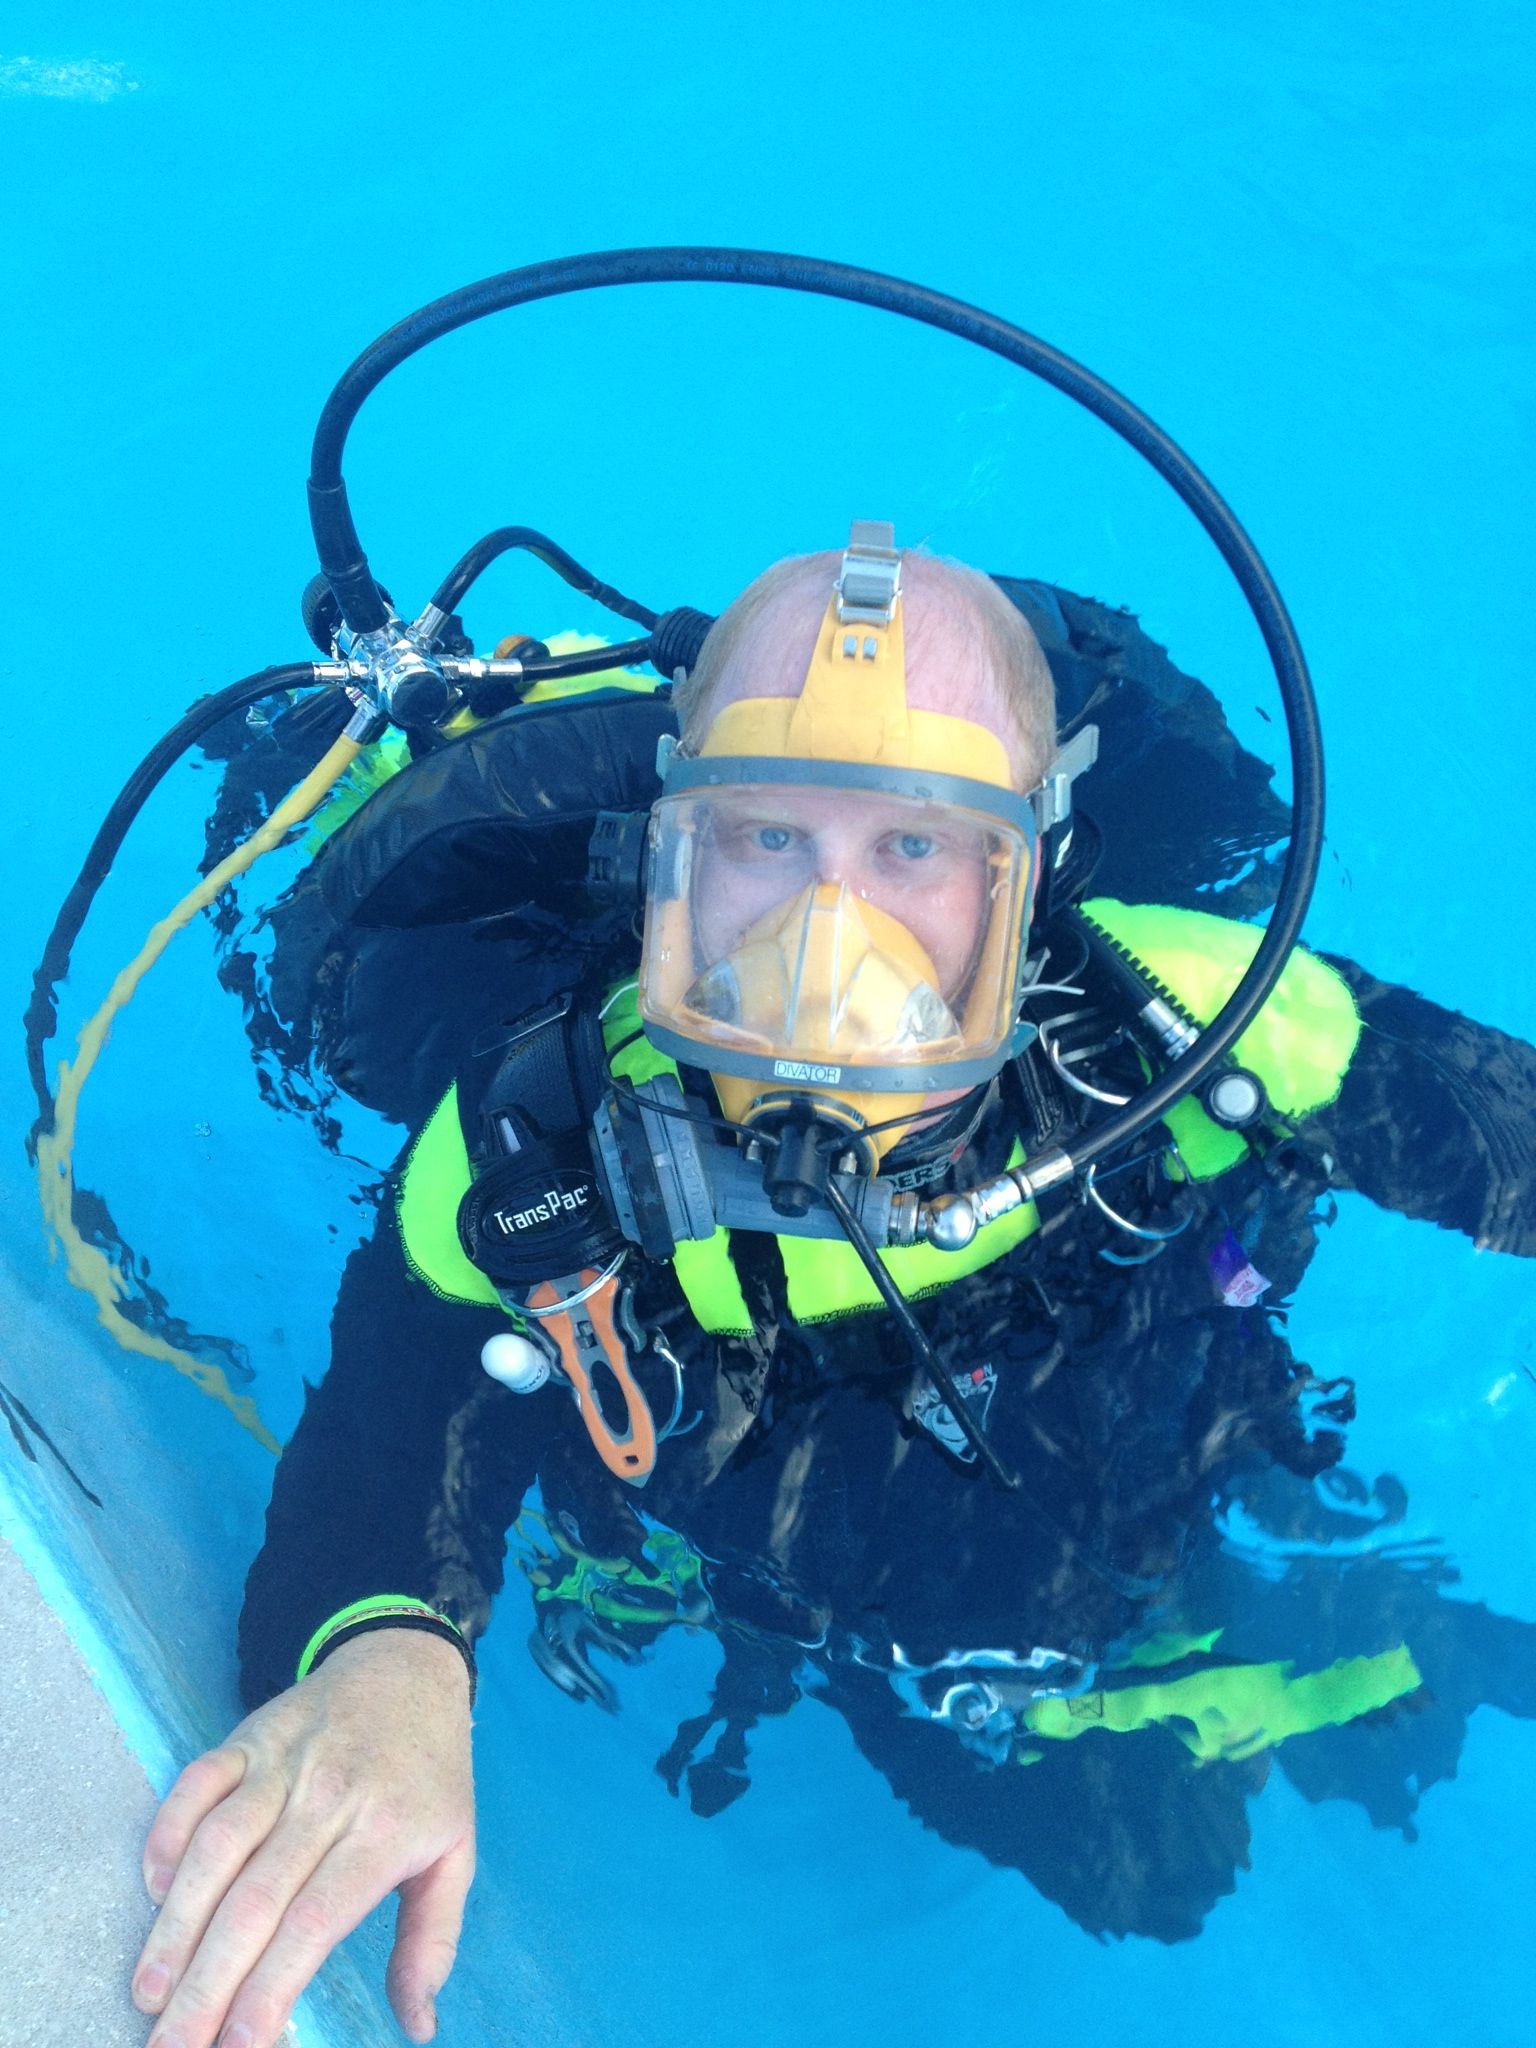 Search and Rescue Scuba Diver 